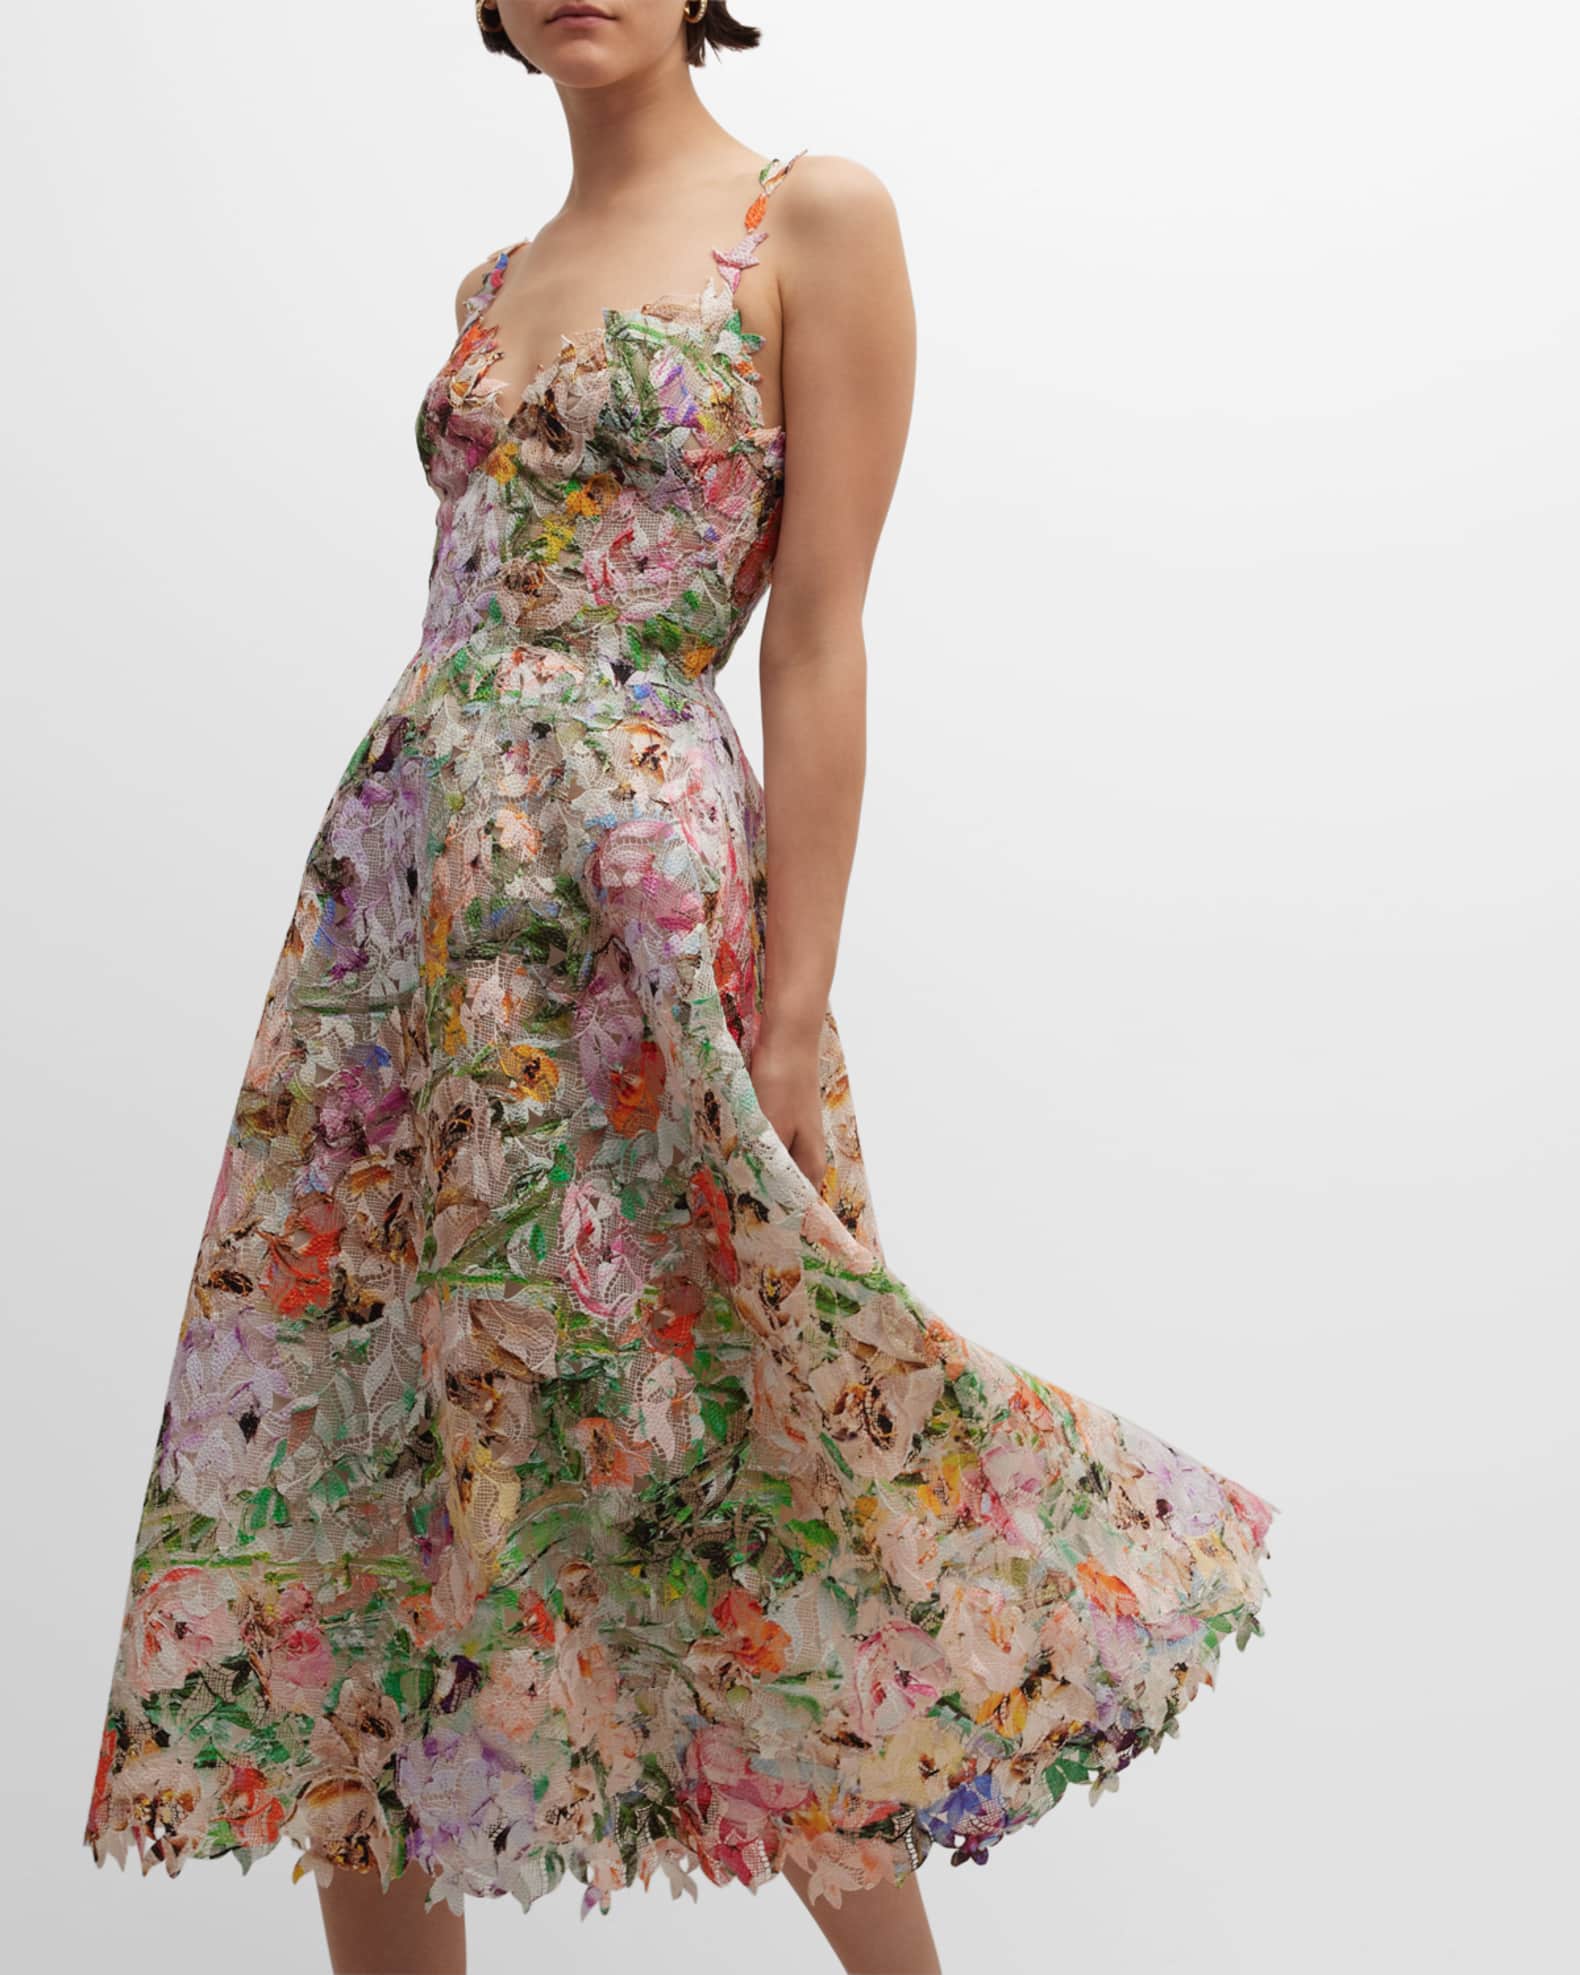 Monique Lhuillier Floral Lace Flared Midi Dress | Neiman Marcus